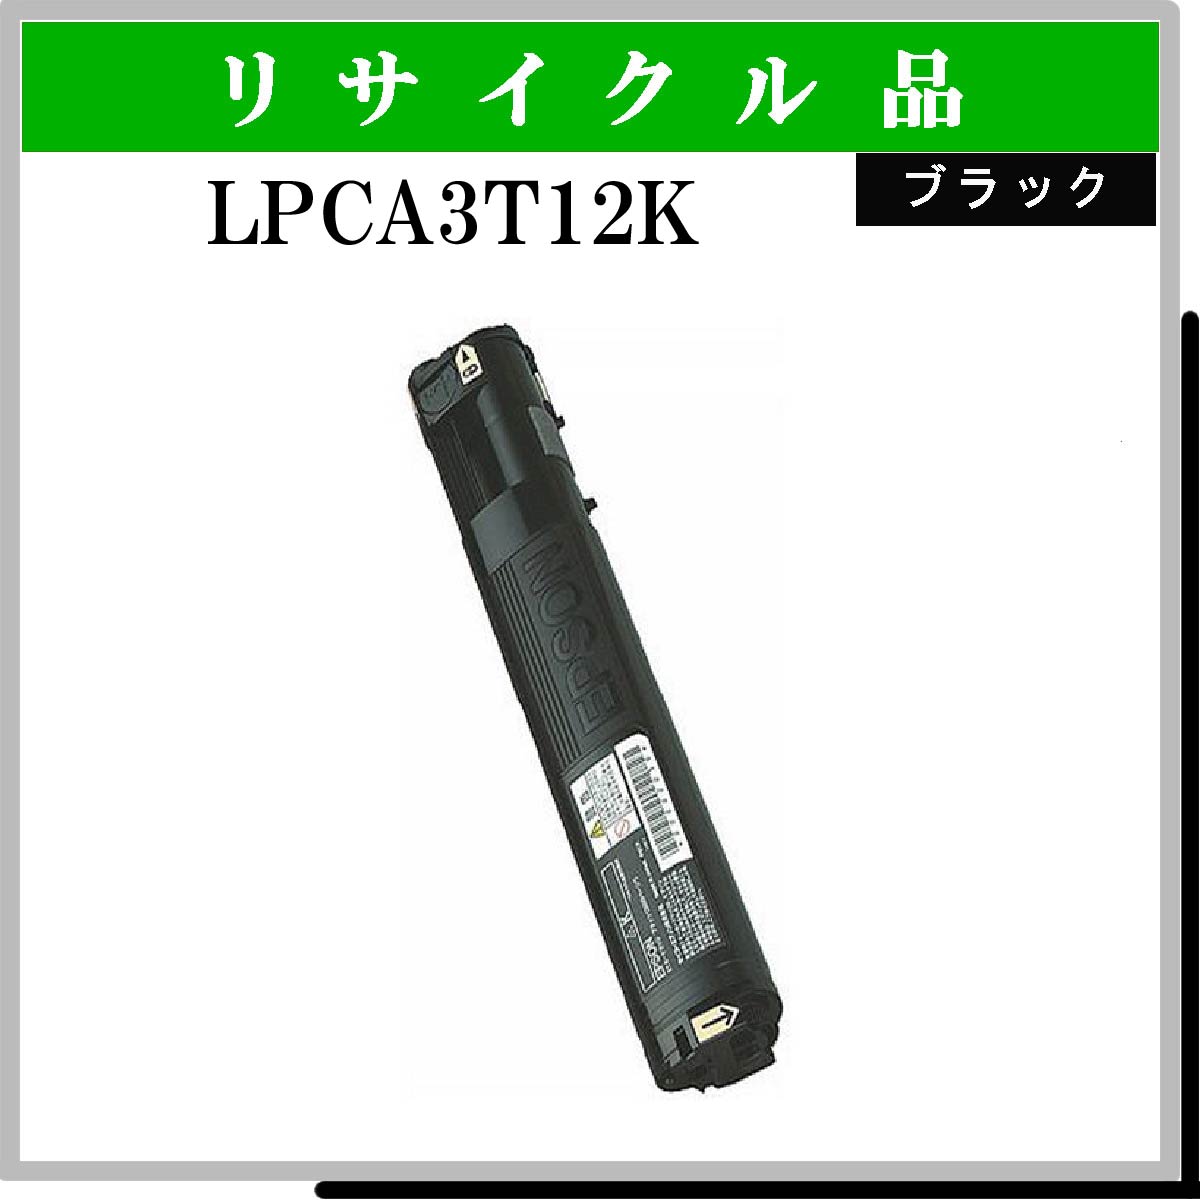 LPCA3T12K